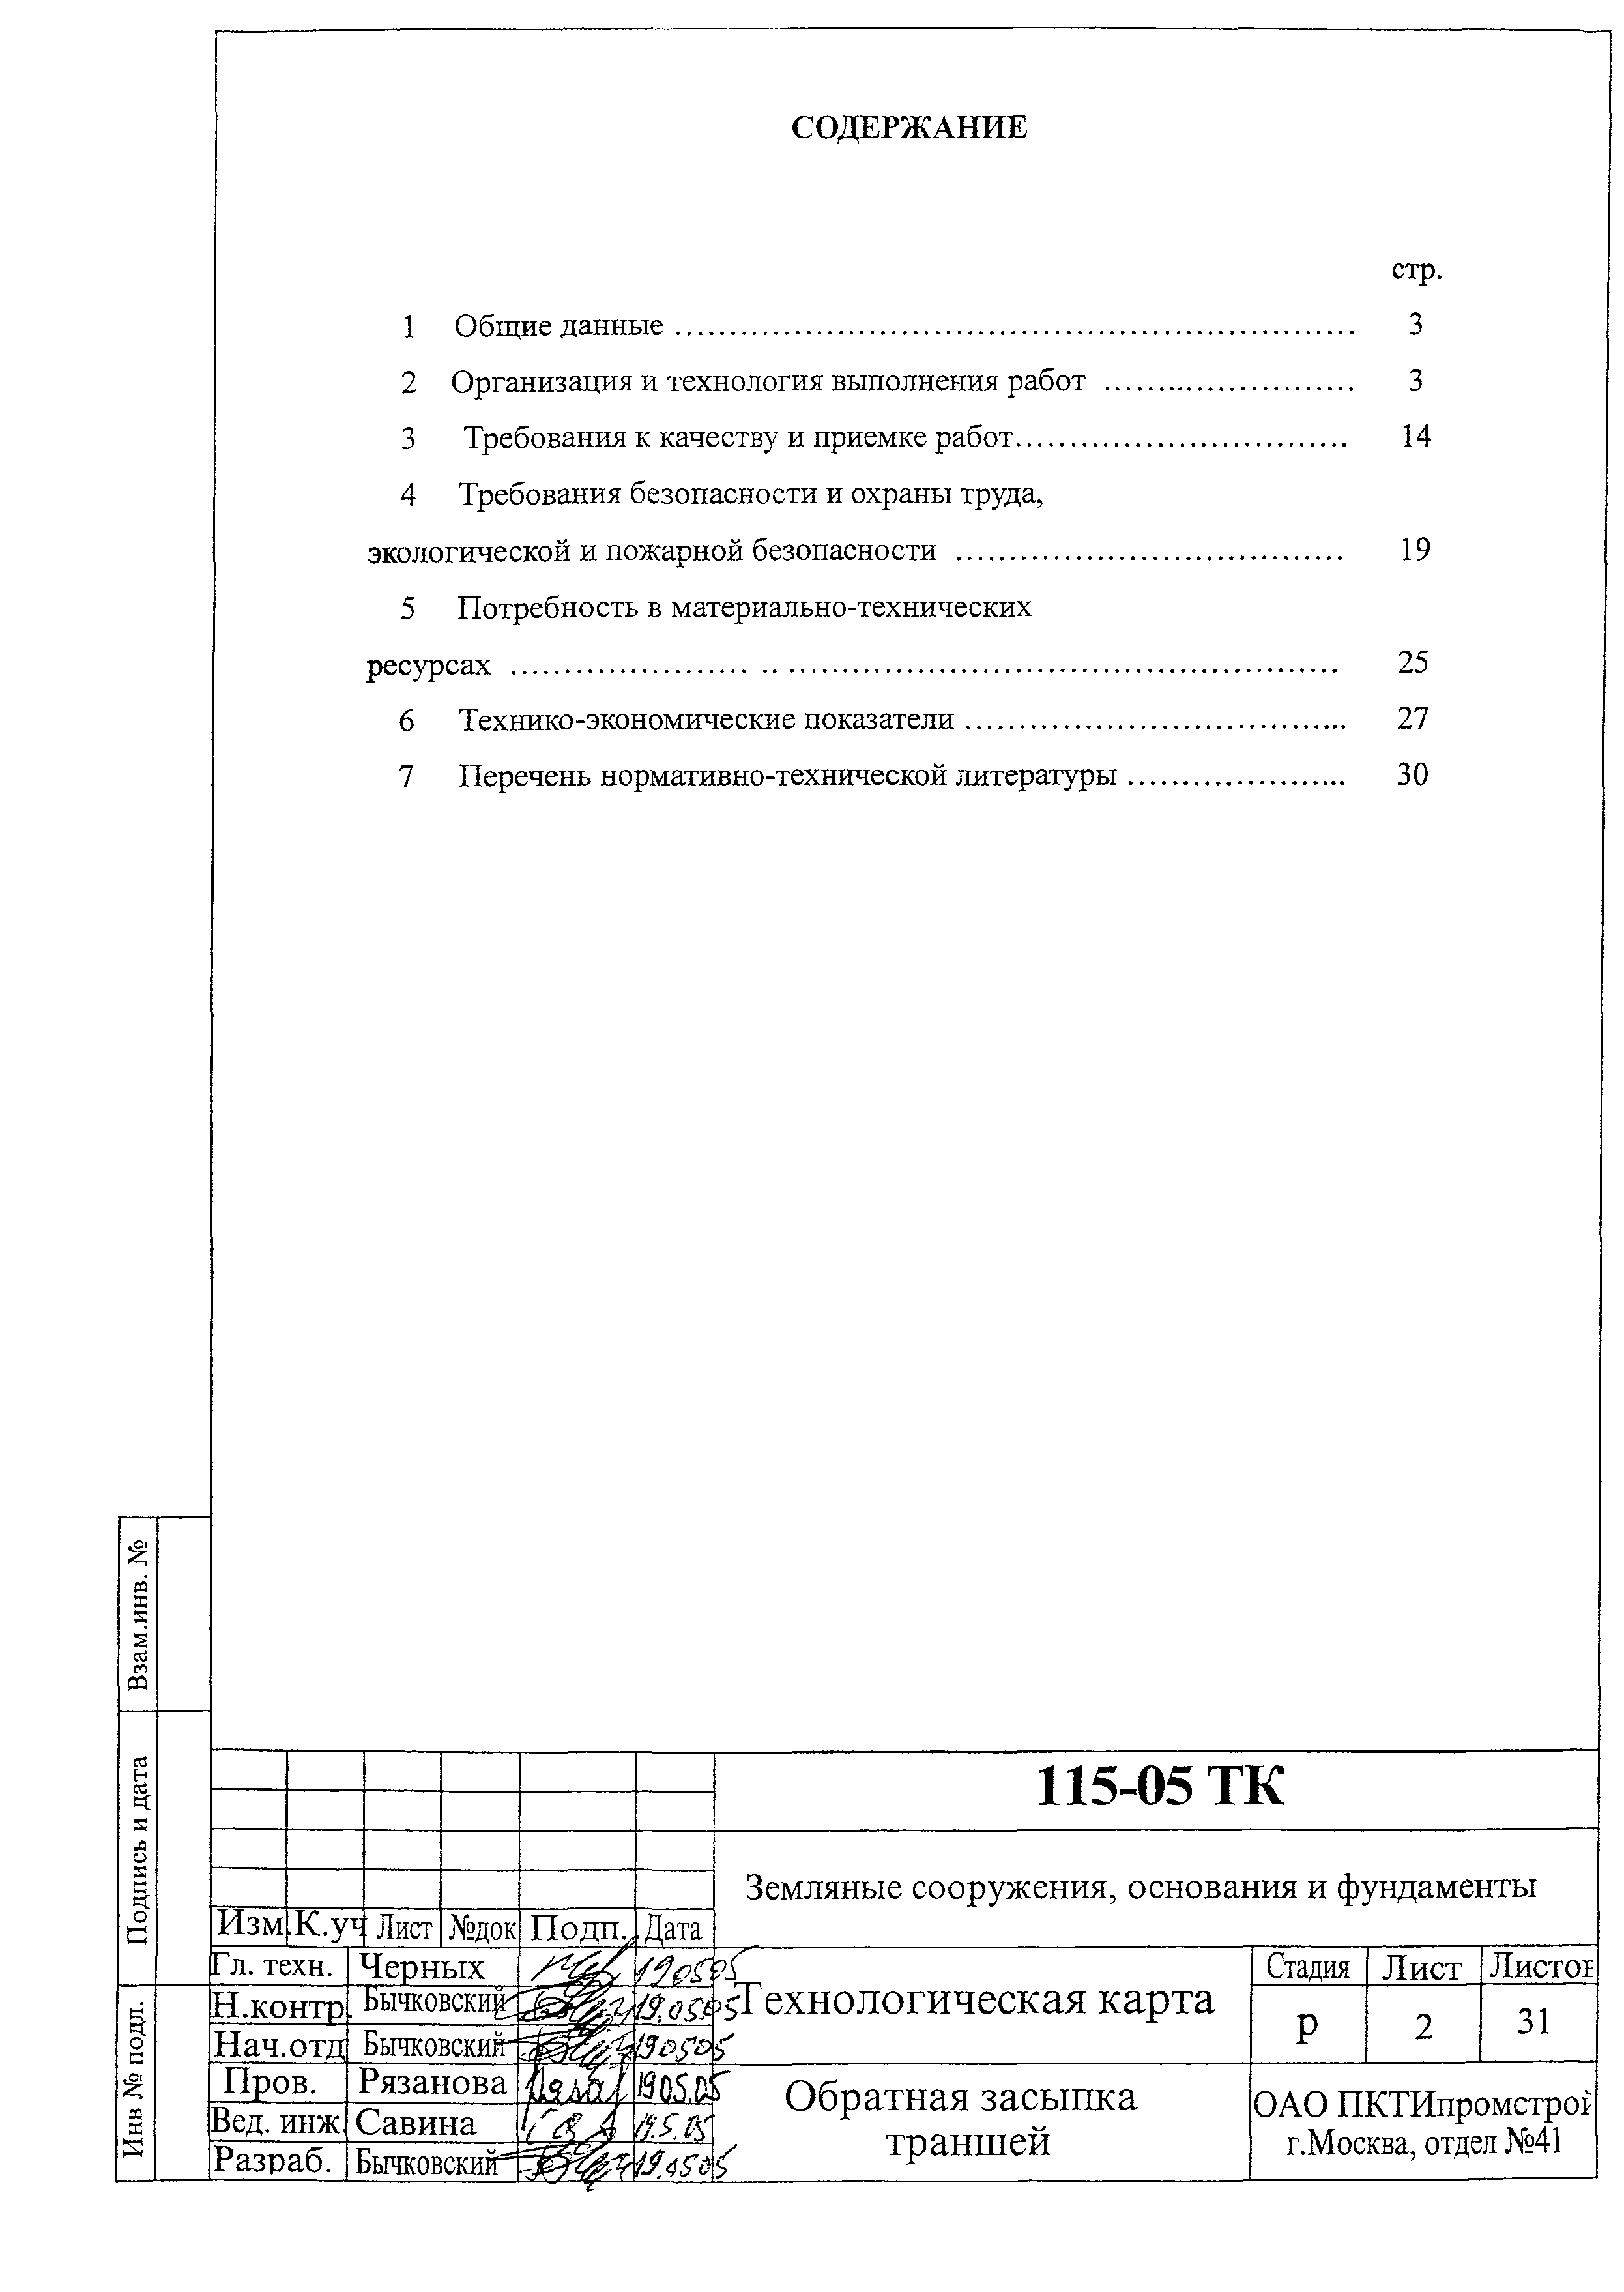 Технологическая карта 115-05 ТК